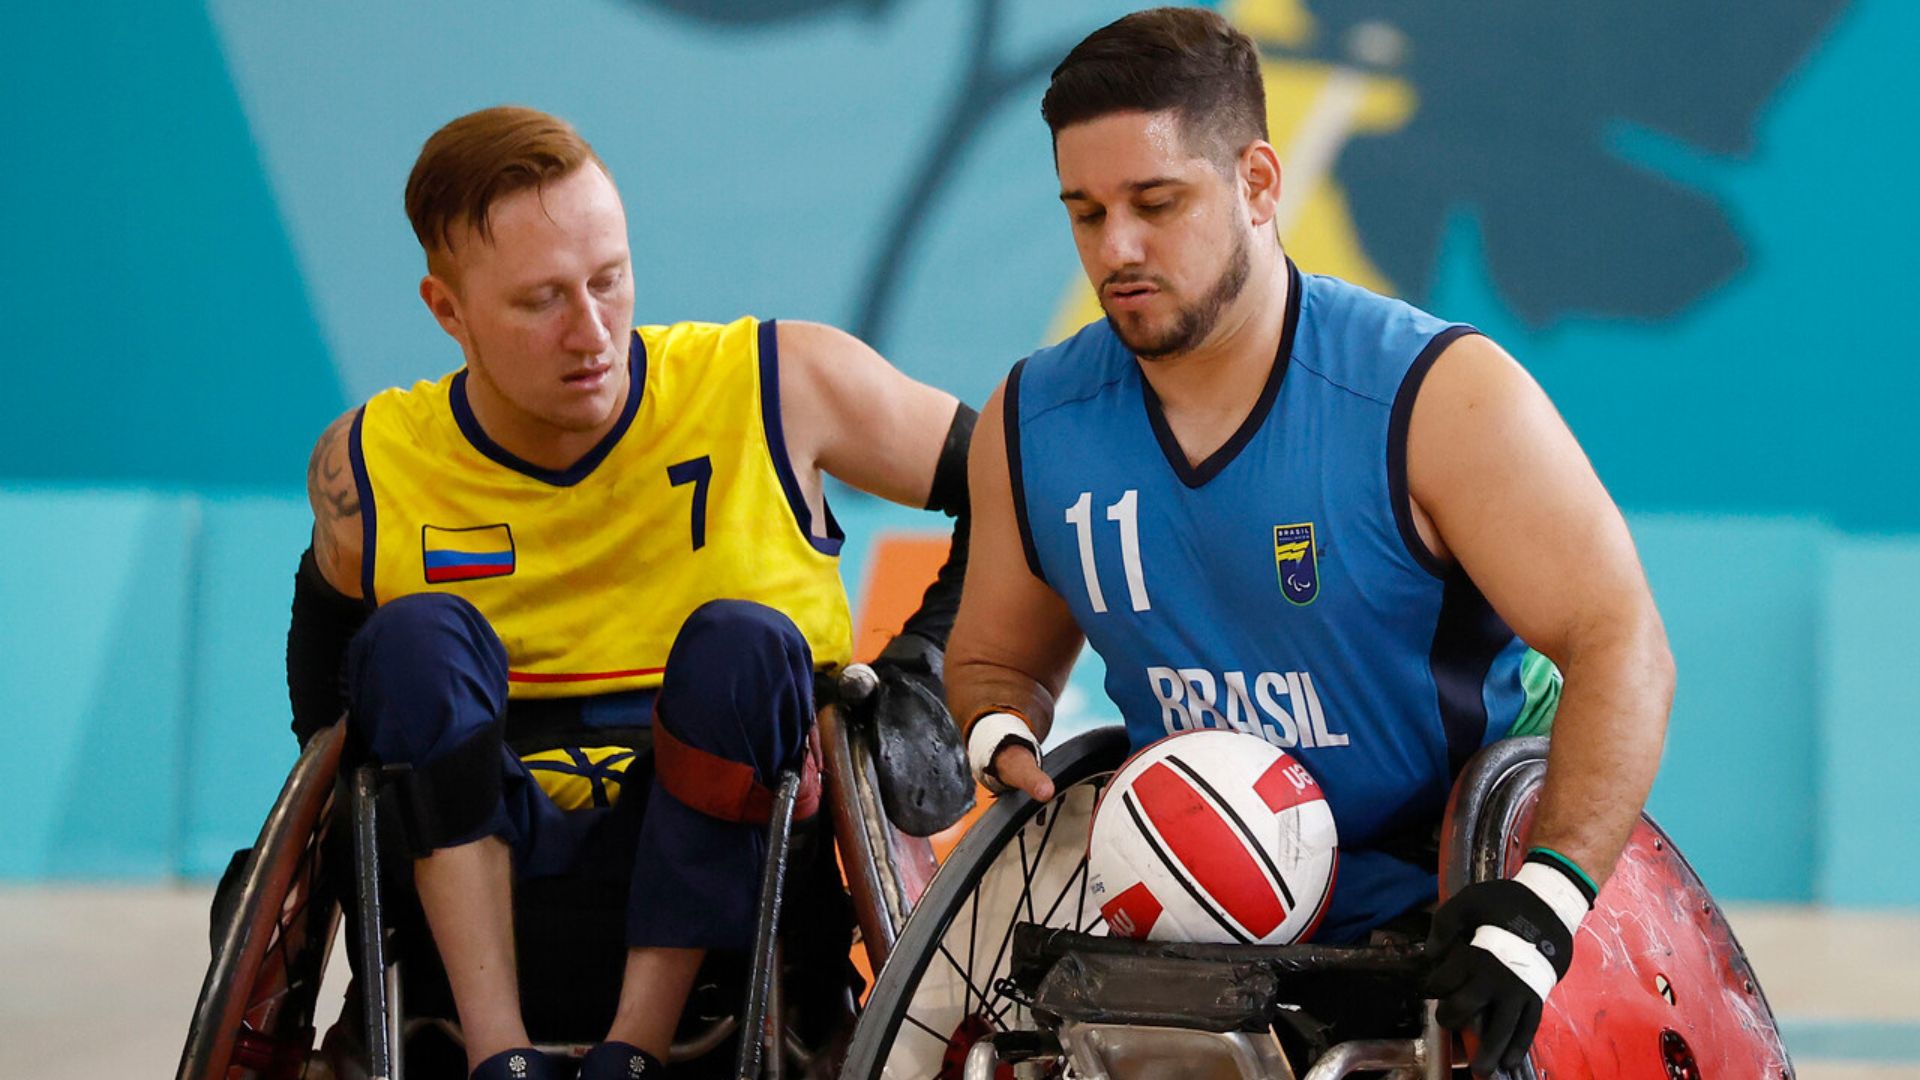 Rugby en silla de ruedas: Brasil le arrebata el bronce a Colombia